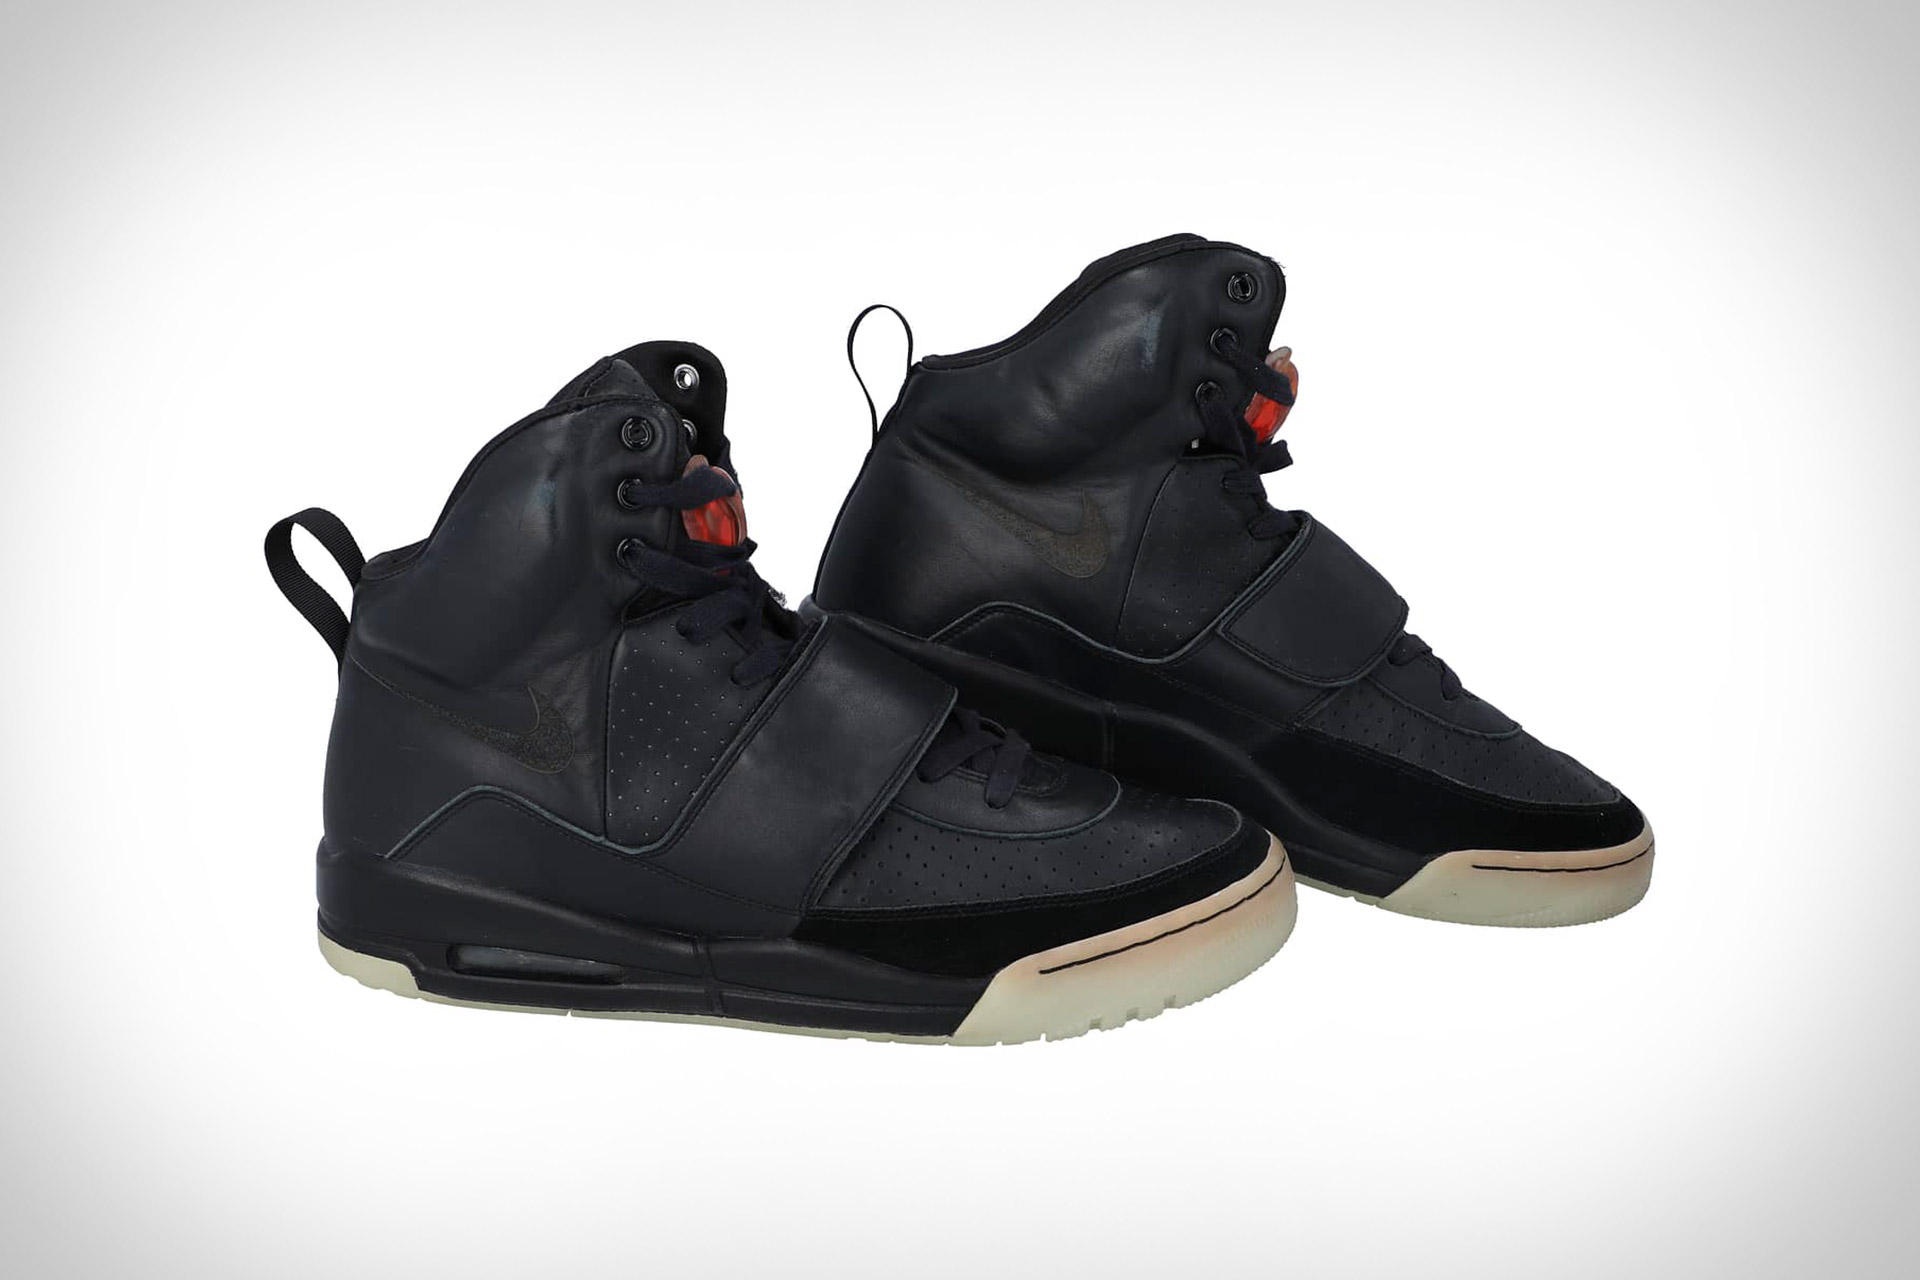 Kanye West Grammy-Worn Nike Air Yeezy Prototype Sneakers